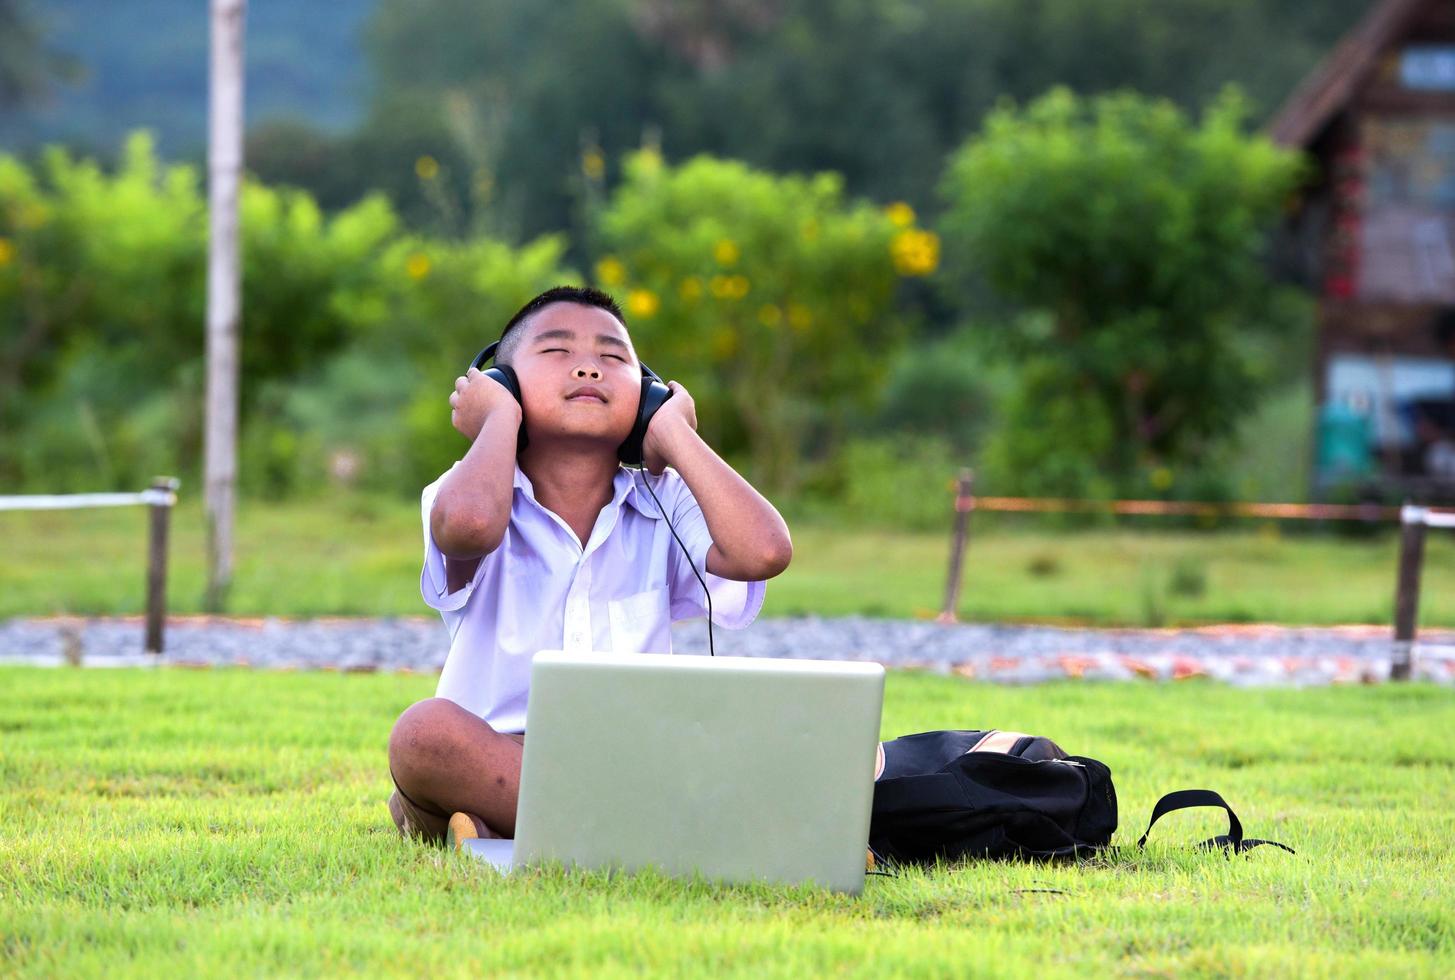 skolbarn tycker om att lyssna på musik med hörlurar på gräsmattan, redido hörlurar. foto